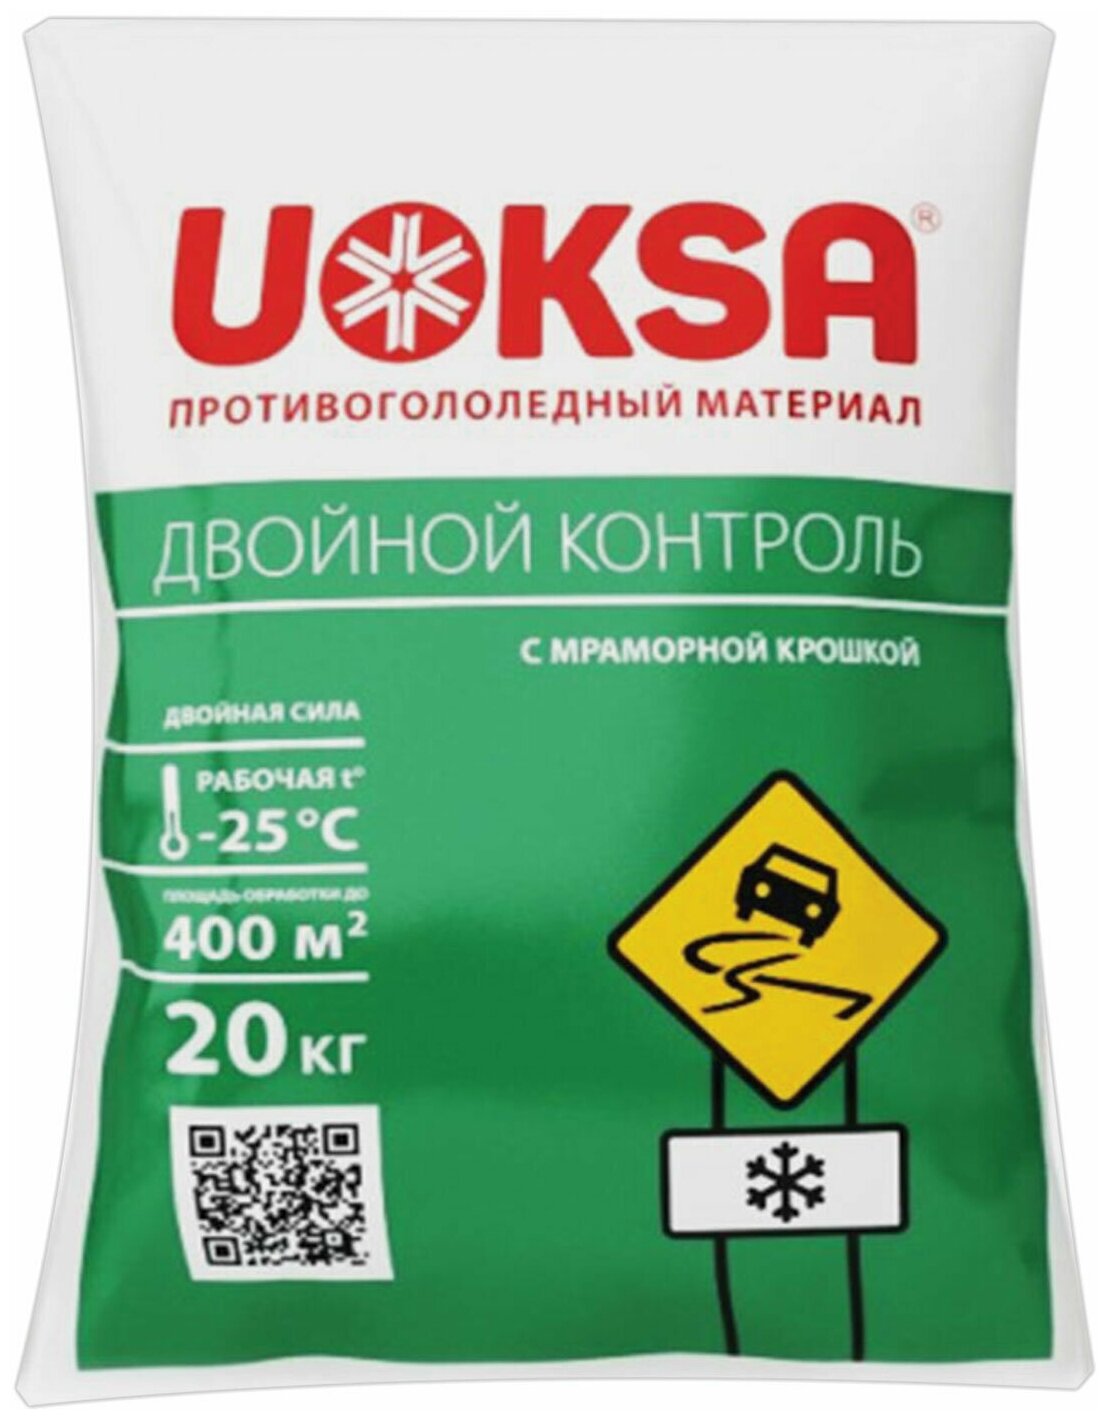 Материал противогололёдный 20 кг UOKSA Двойной Контроль до -25°C хлорид кальция + соли + мраморная крошка 91833